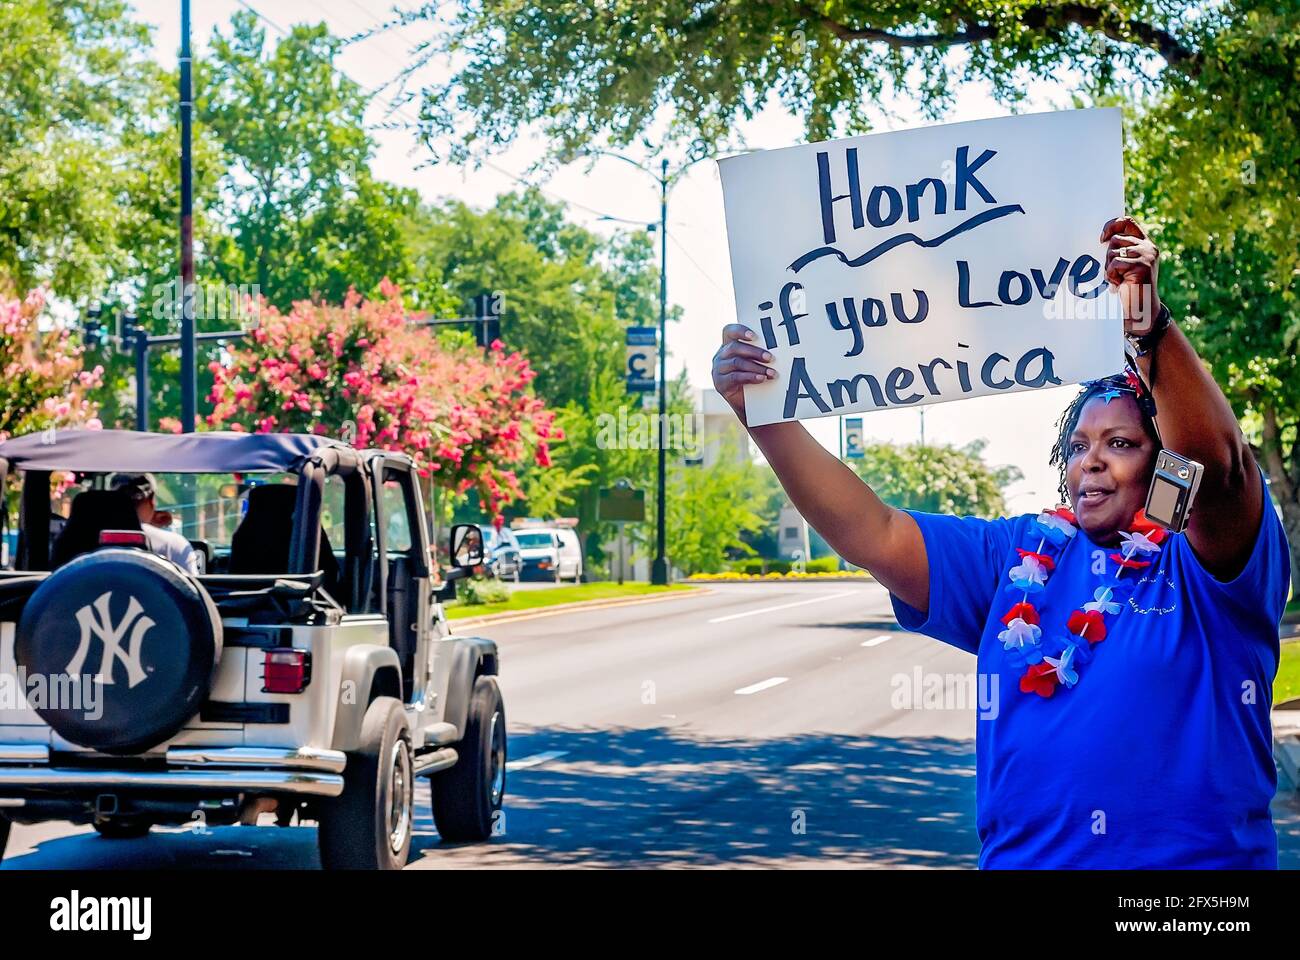 Am 30. Juni 2011 in Columbus, Mississippi, hält eine afroamerikanische Frau ein Schild, das Autofahrer dazu auffordert, ihre Autohupe zu hupen, wenn sie Amerika lieben. Stockfoto